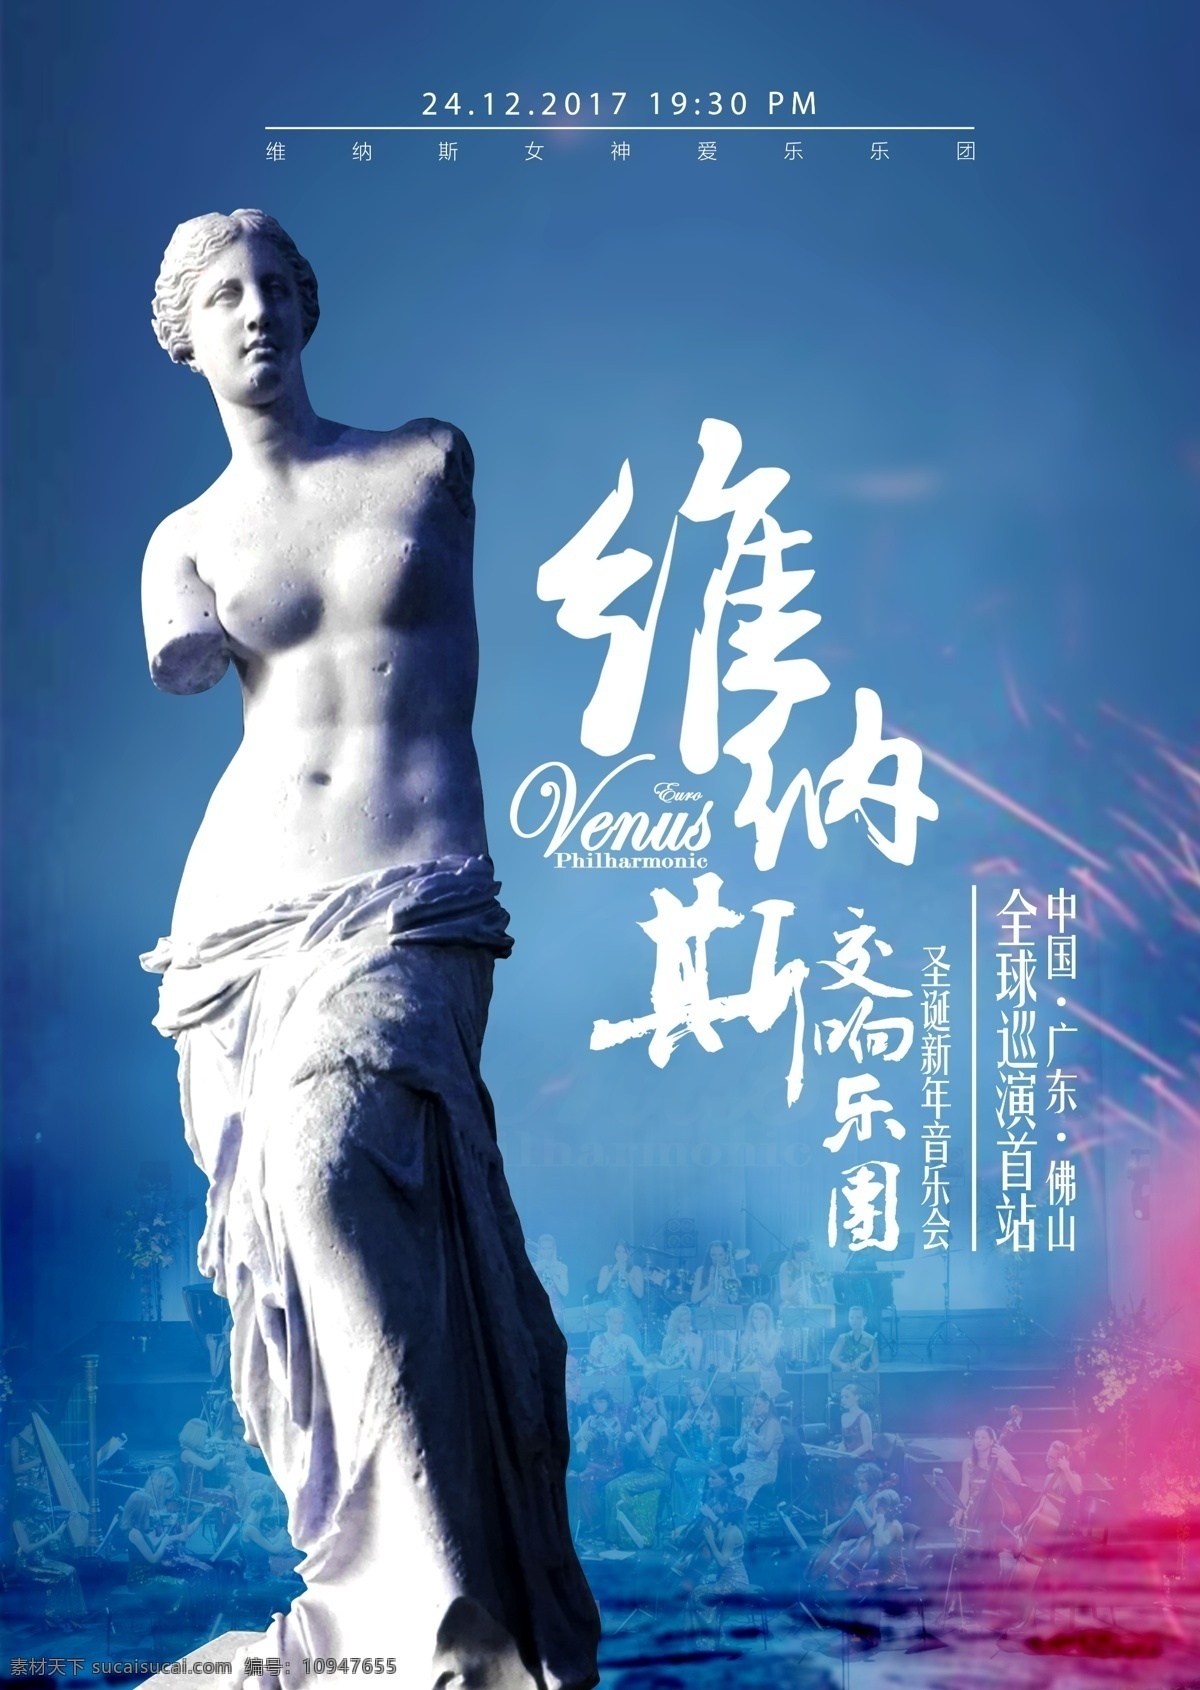 交响乐团 圣诞 新年 音乐会 海报 雕塑 蓝色背景 抽象背景 音乐海报 维纳斯女神 火花 交响乐